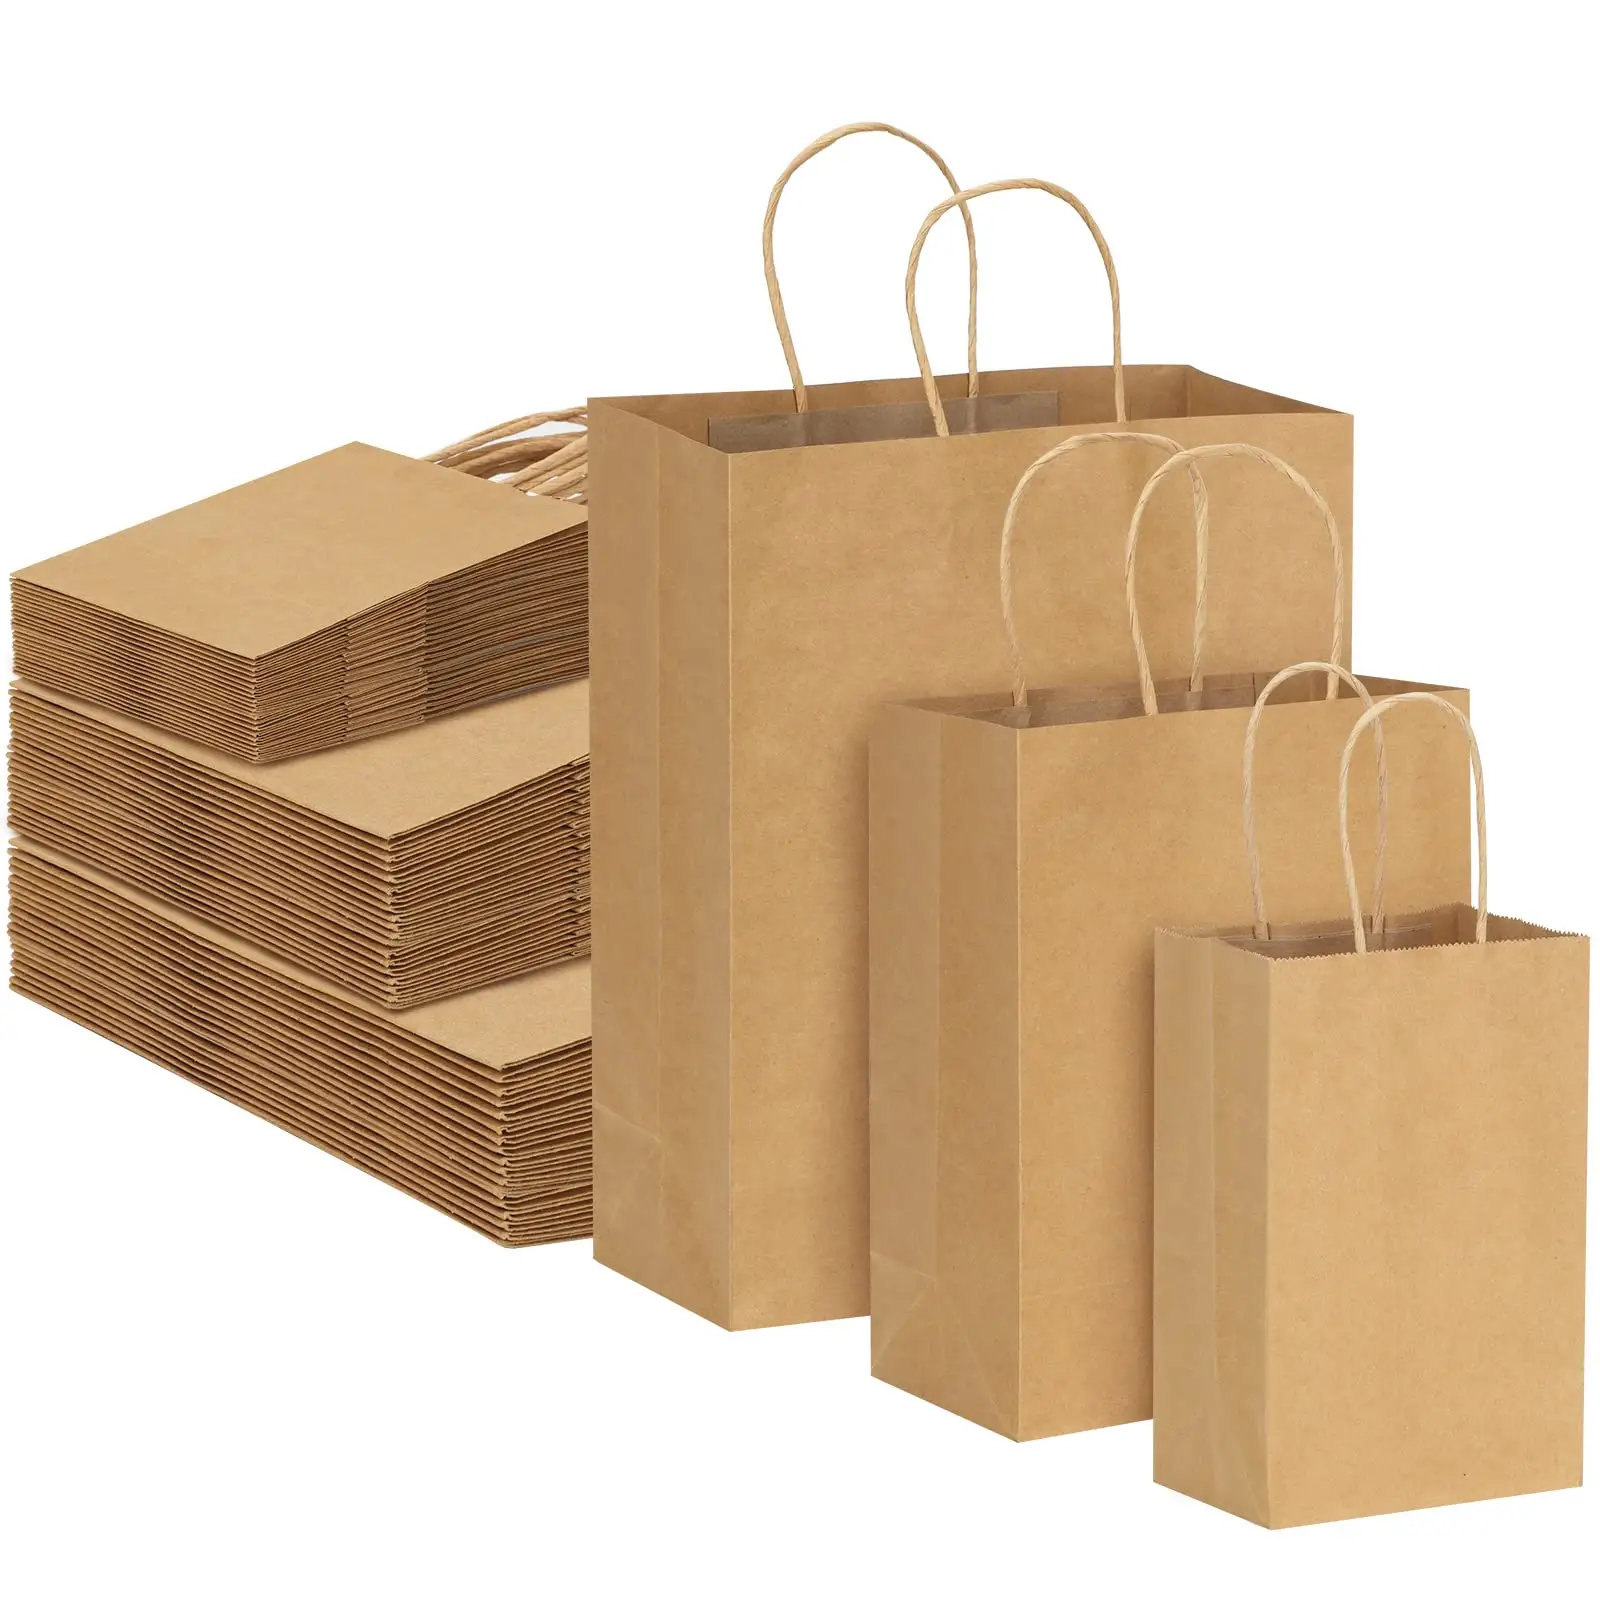 Tas kertas coklat dengan pegangan tas hadiah ukuran Campuran kertas Kraft besar untuk bisnis belanja tas barang dagangan ritel